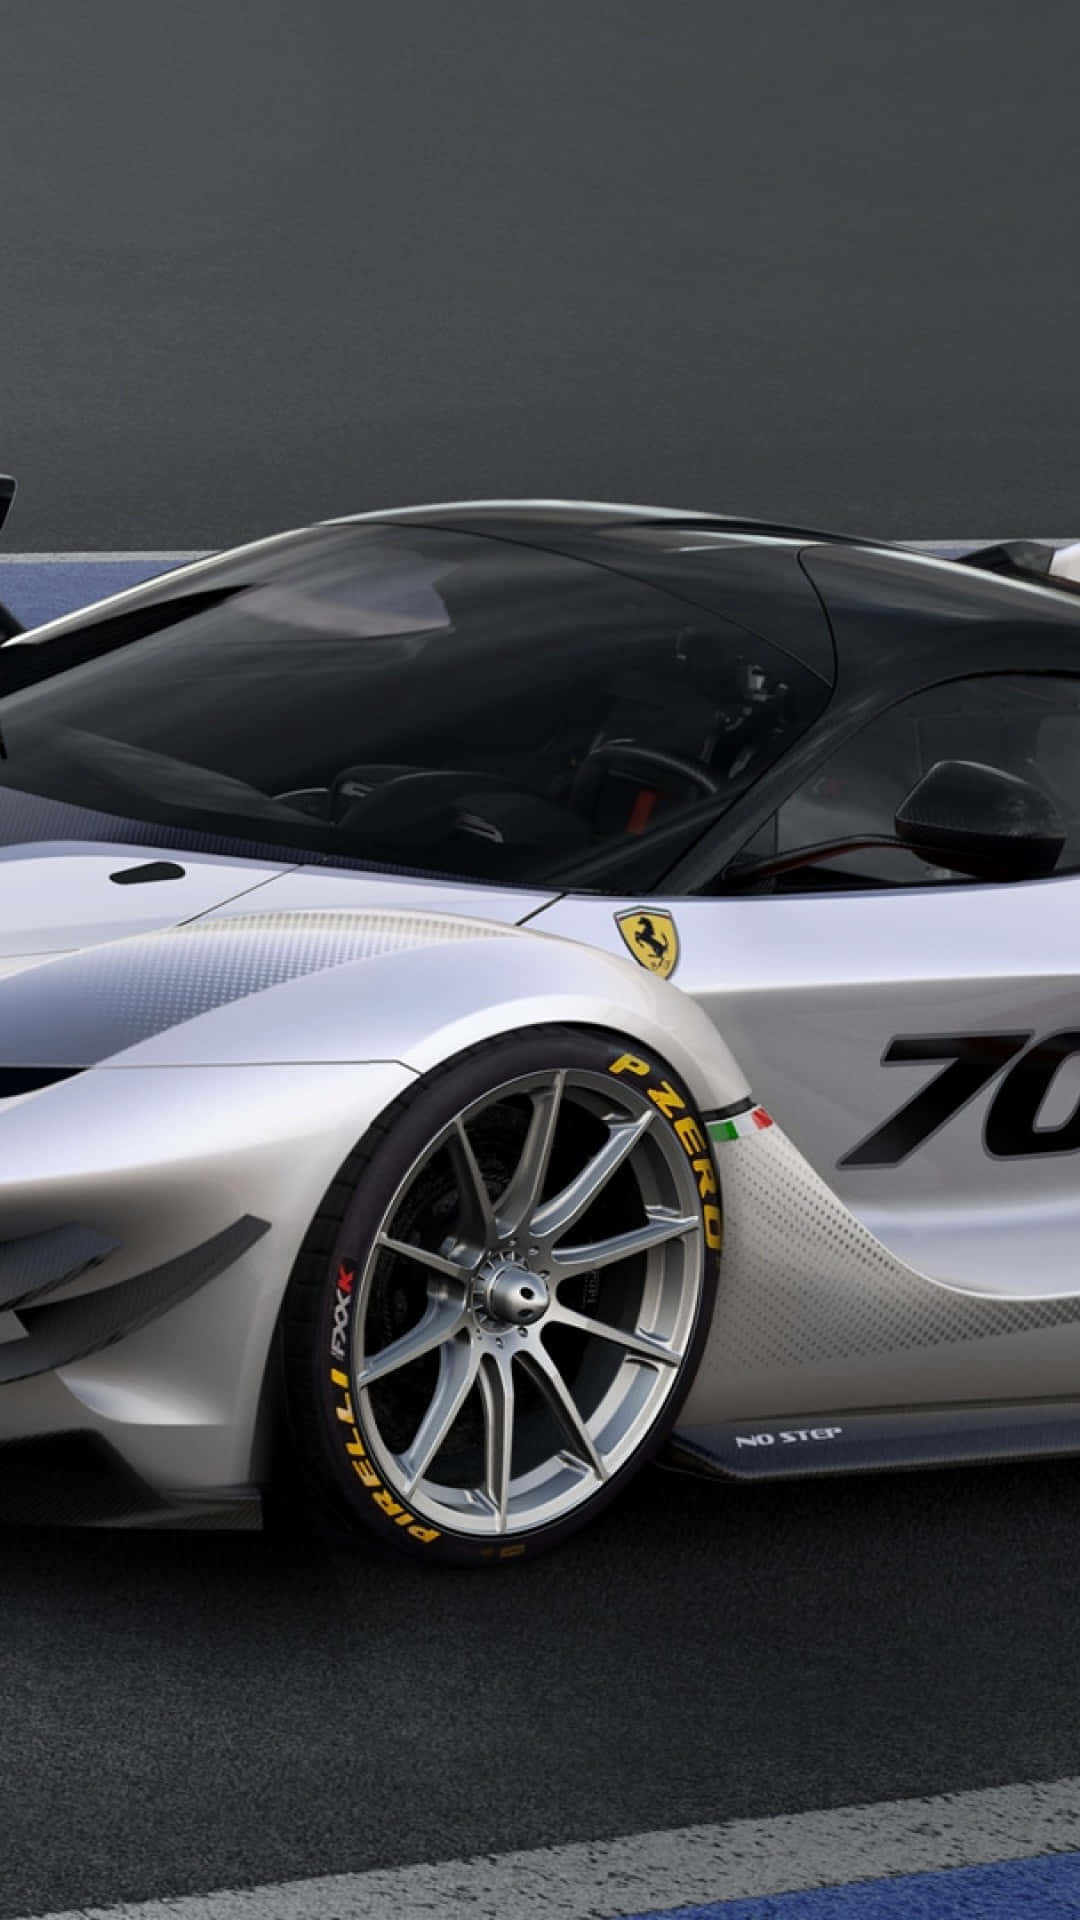 Ilconcetto Ferrari F12tr È Mostrato In Questa Immagine Sfondo